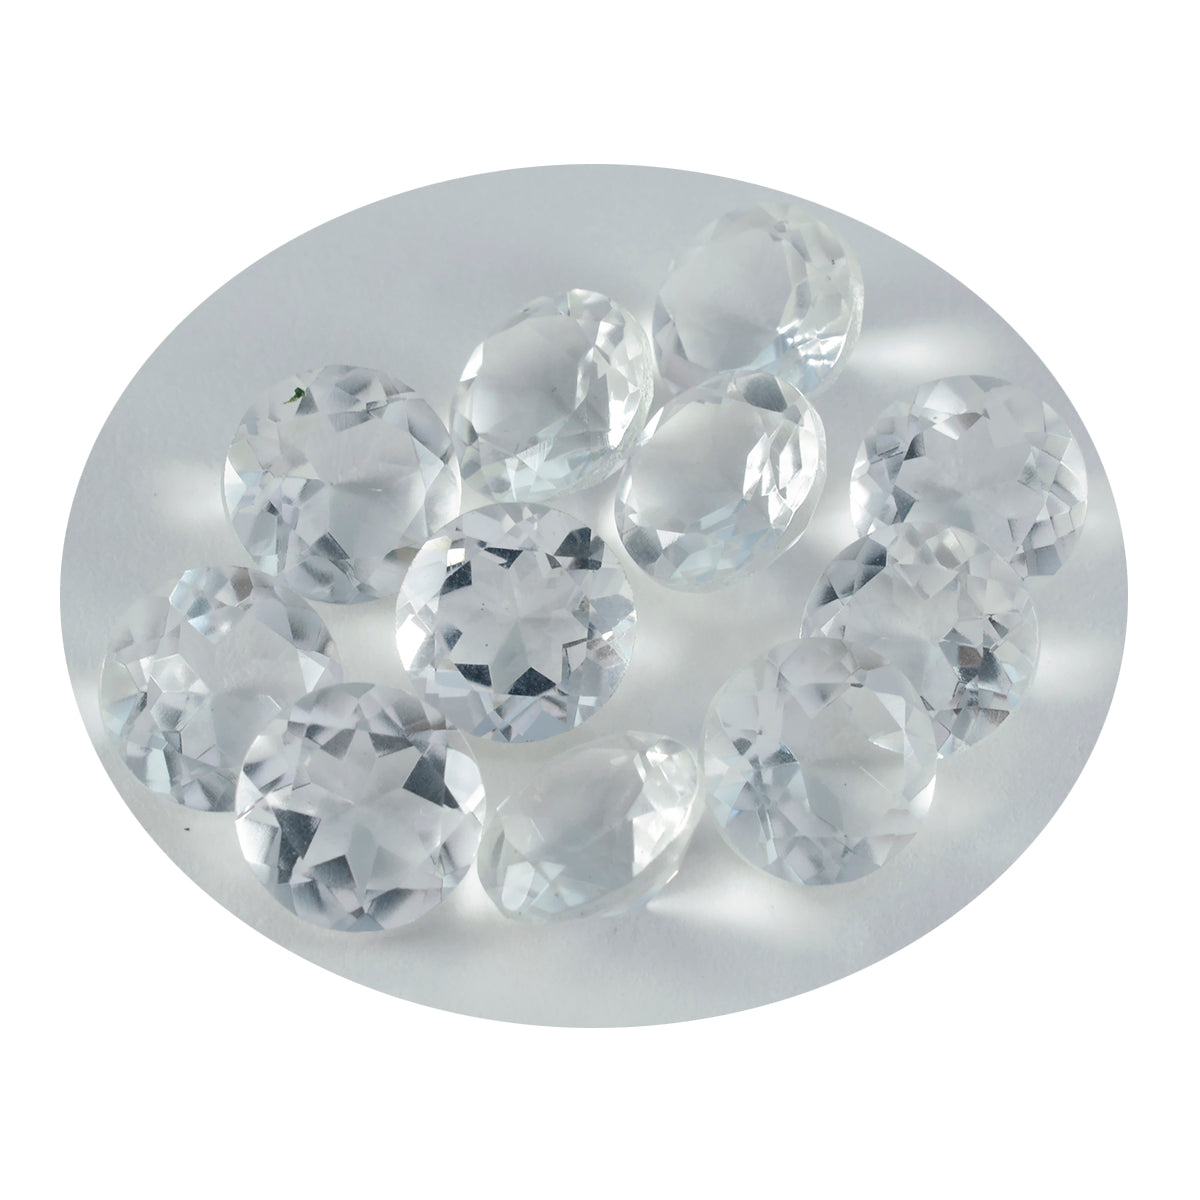 riyogems 1шт белый кристалл кварца ограненный 8х8 мм круглая форма качество сыпучий драгоценный камень